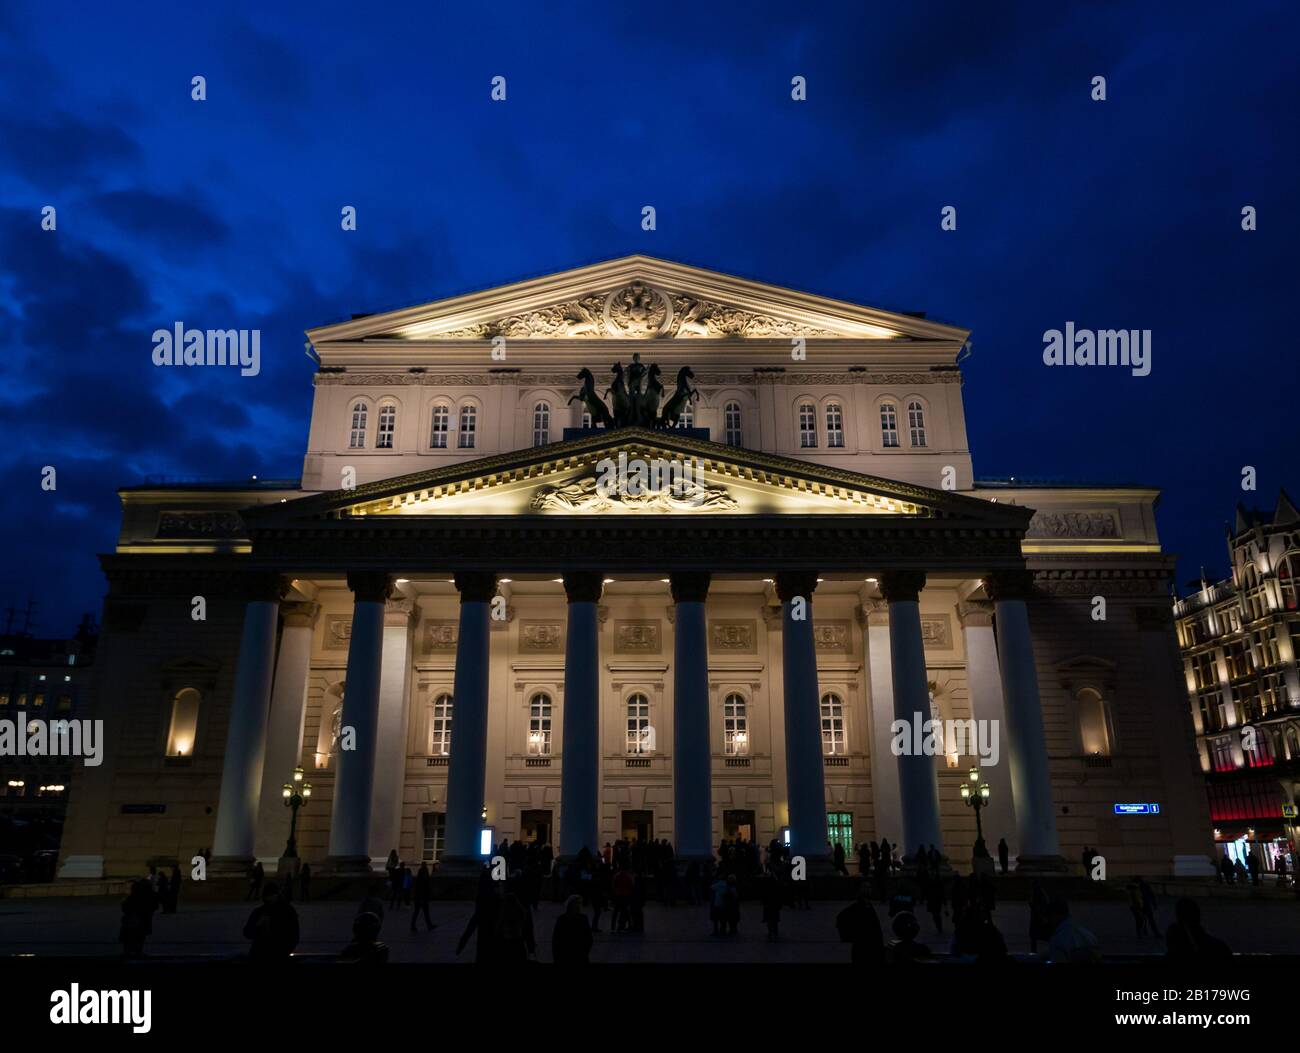 Teatro Bolshoi illuminato di notte con persone in piazza, Piazza del Teatro, Mosca, Federazione russa Foto Stock